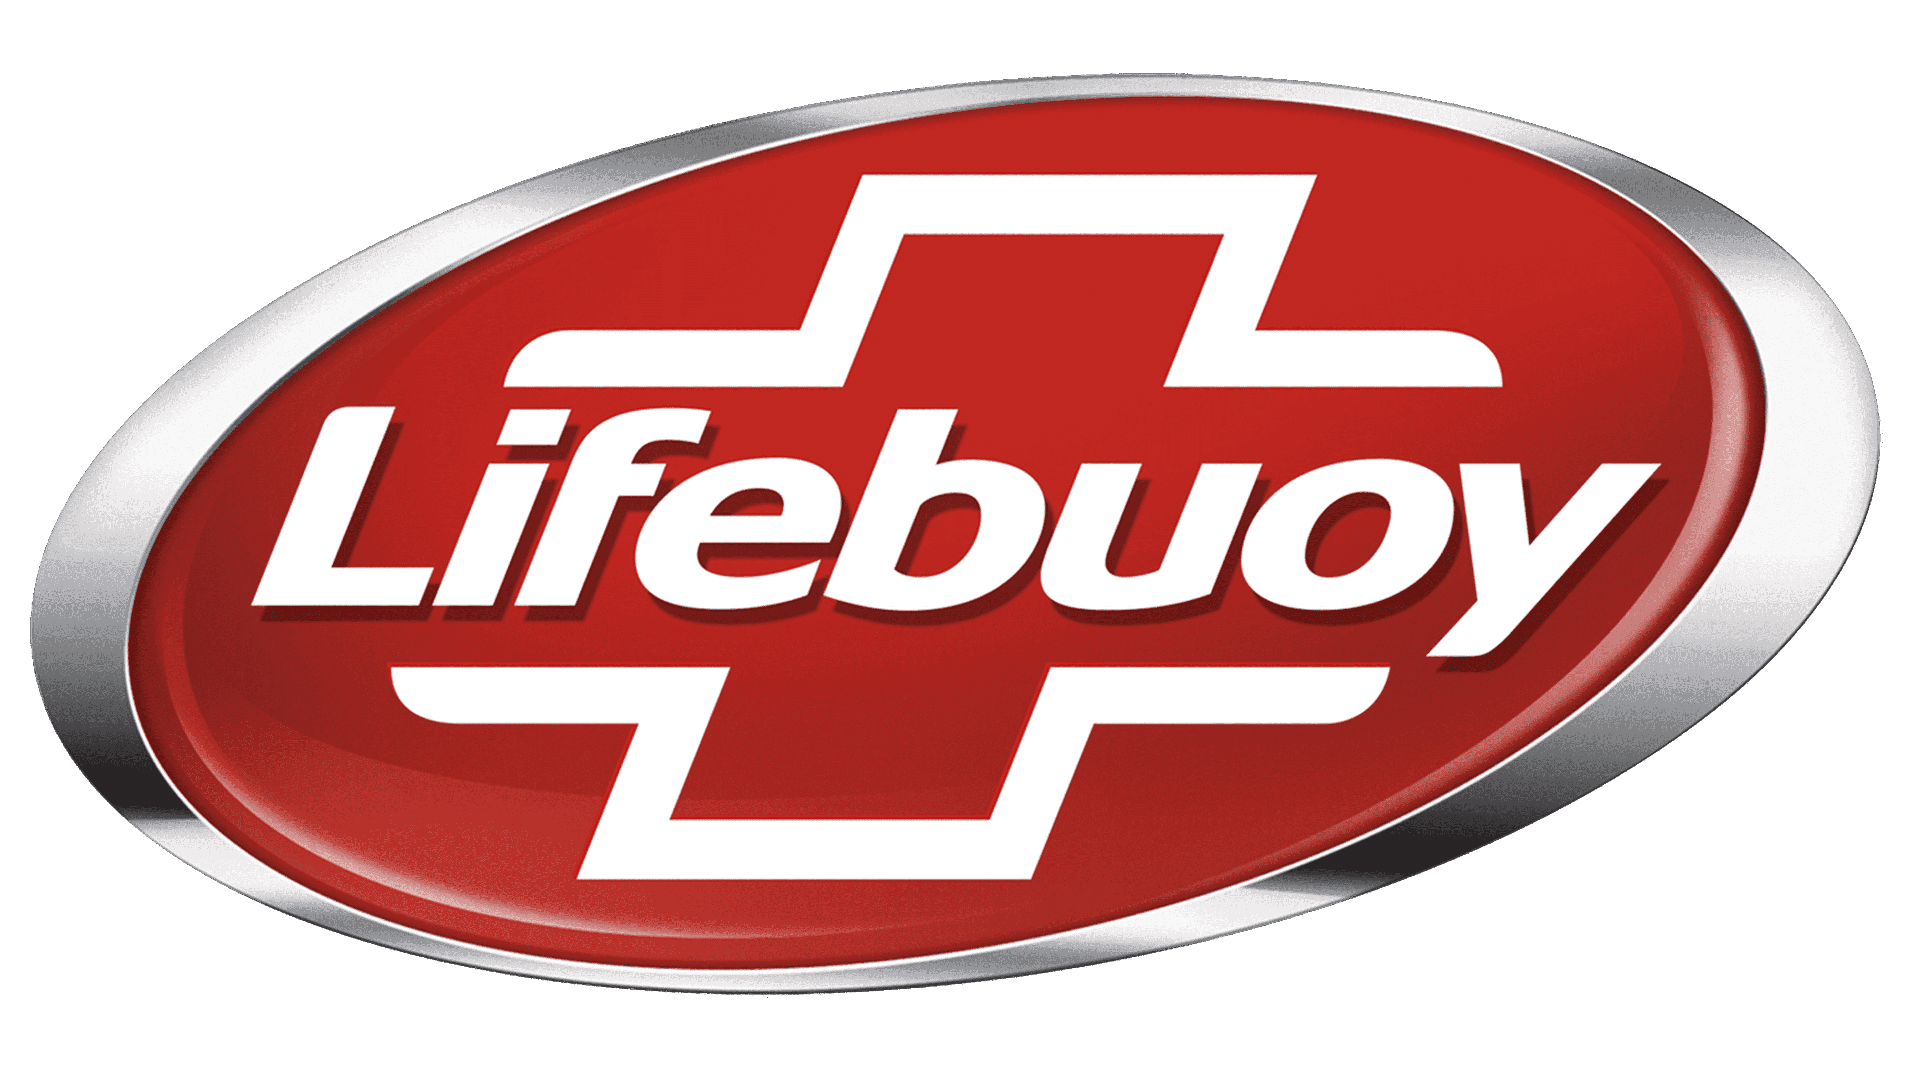 Brand: Lifebuoy